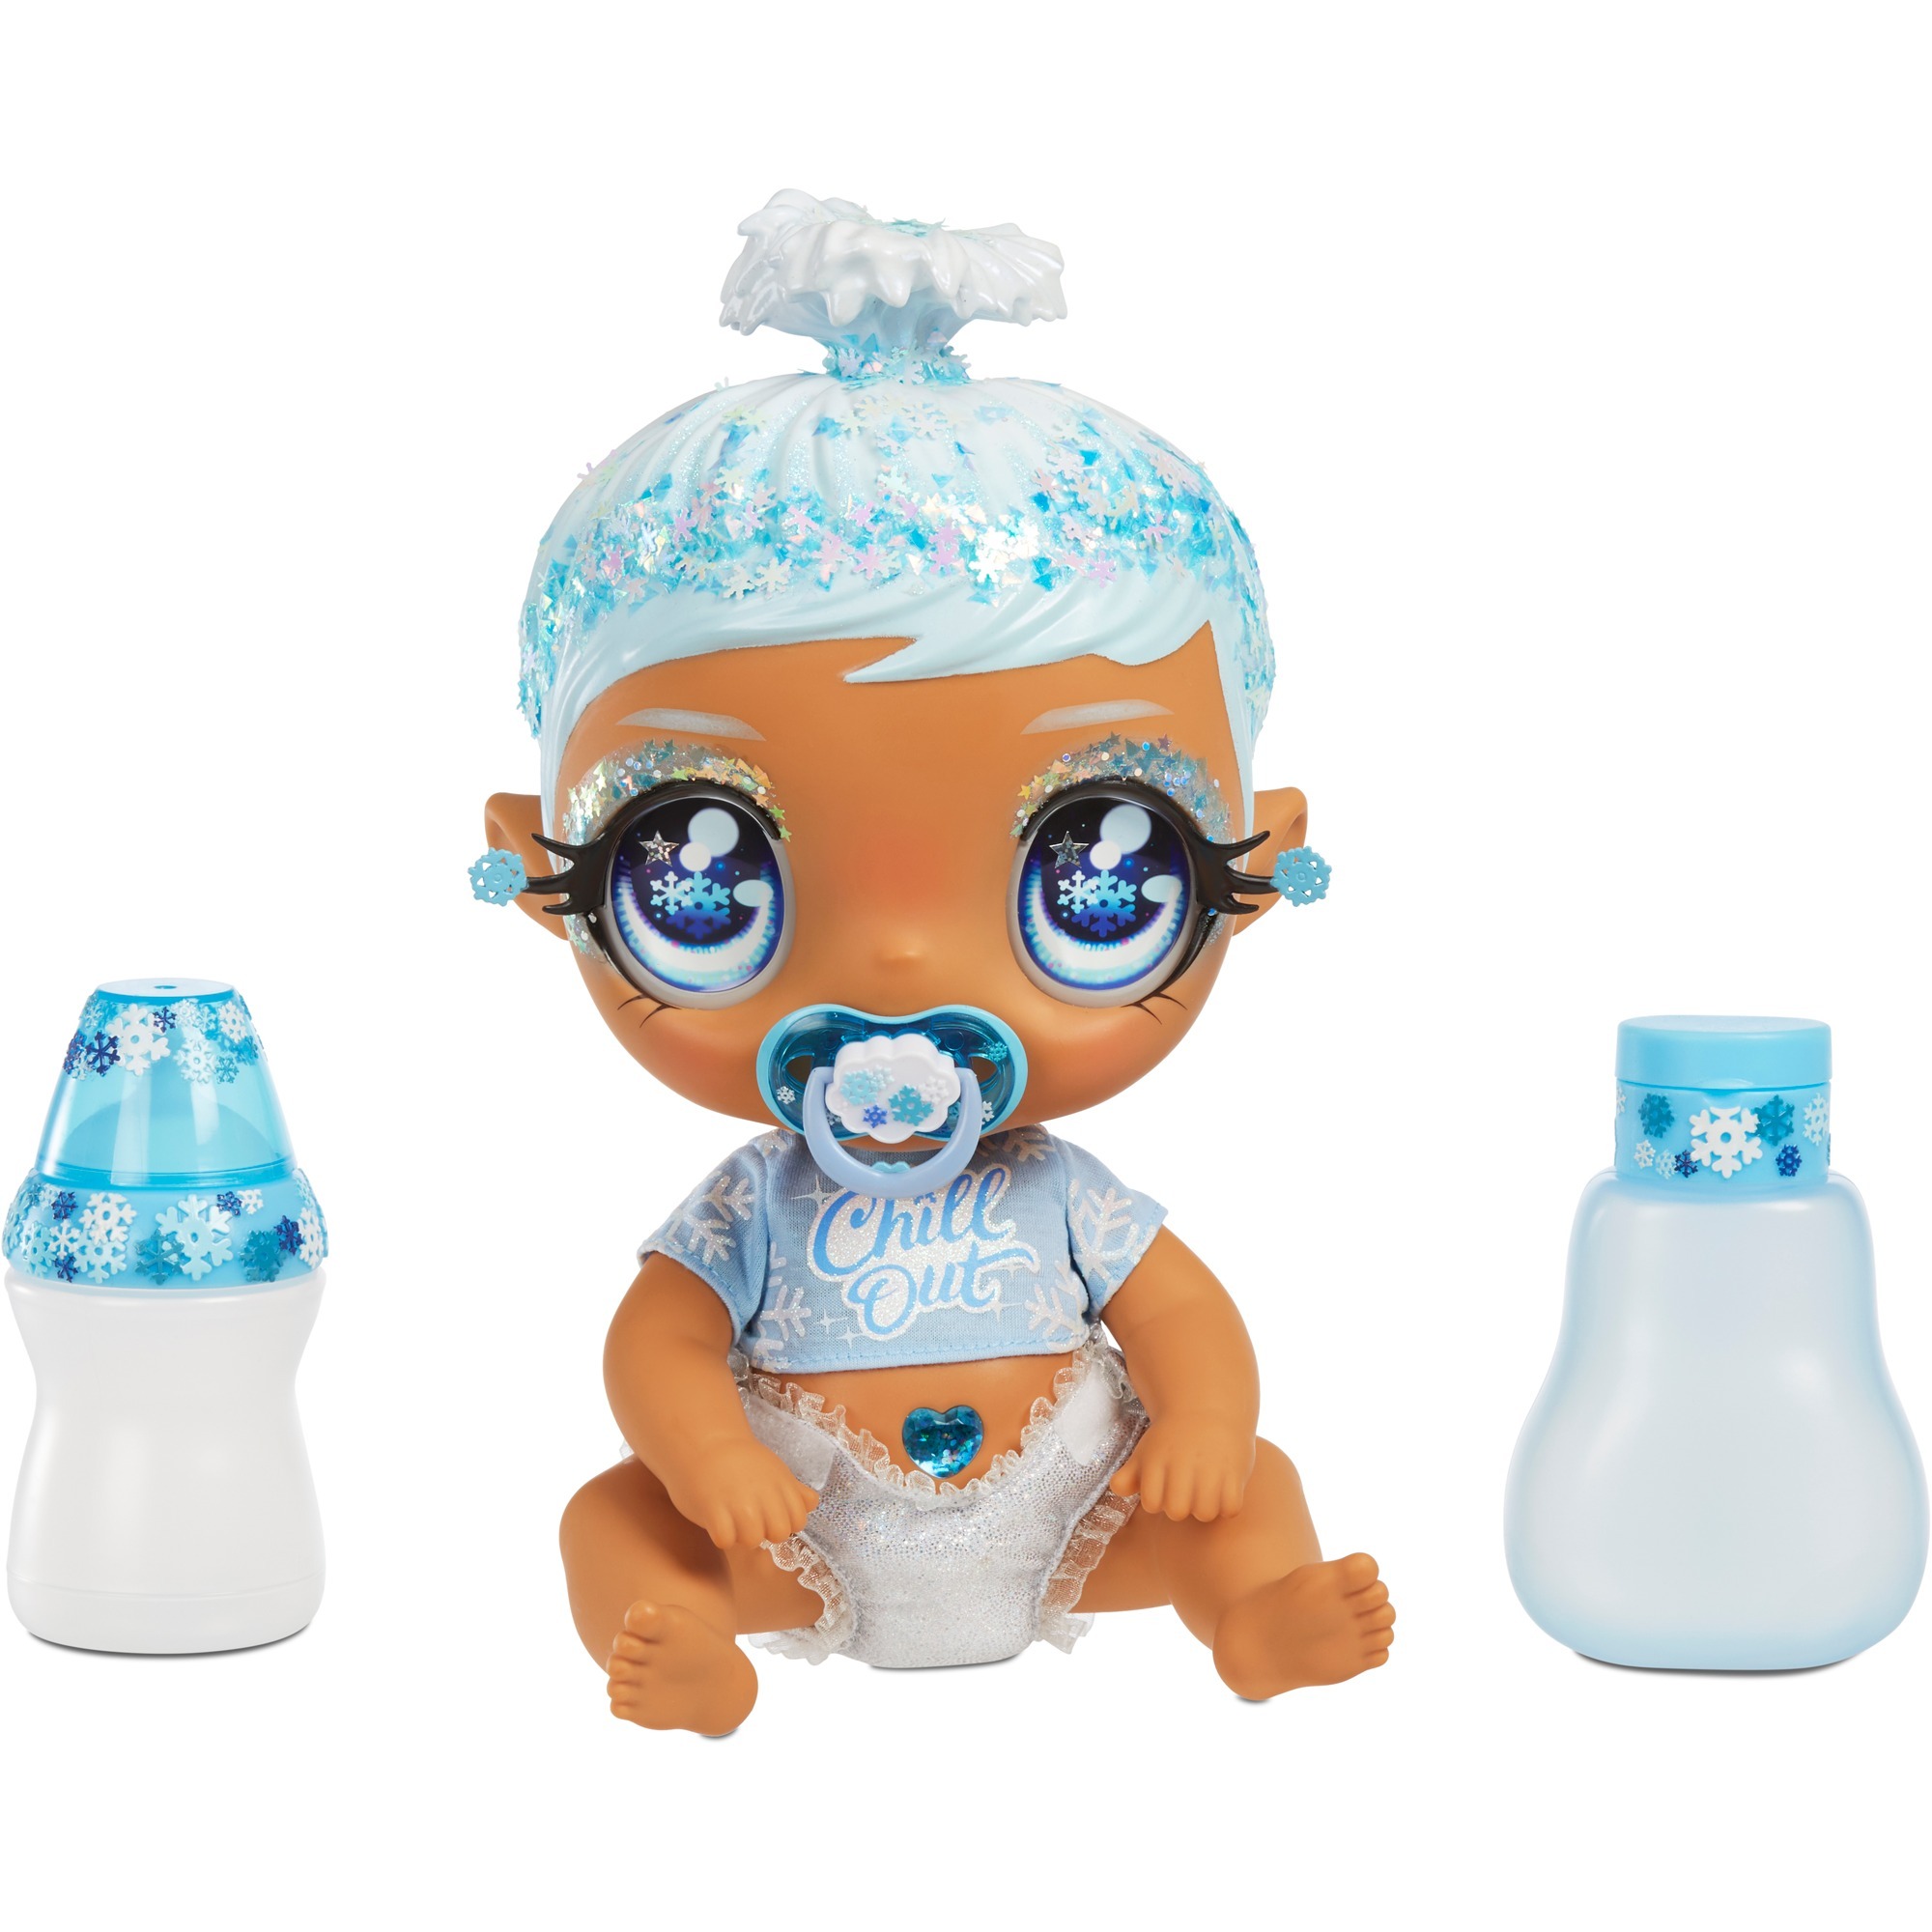 Image of Alternate - Glitter Babyz Doll - Light Blue (Snowflake), Puppe online einkaufen bei Alternate